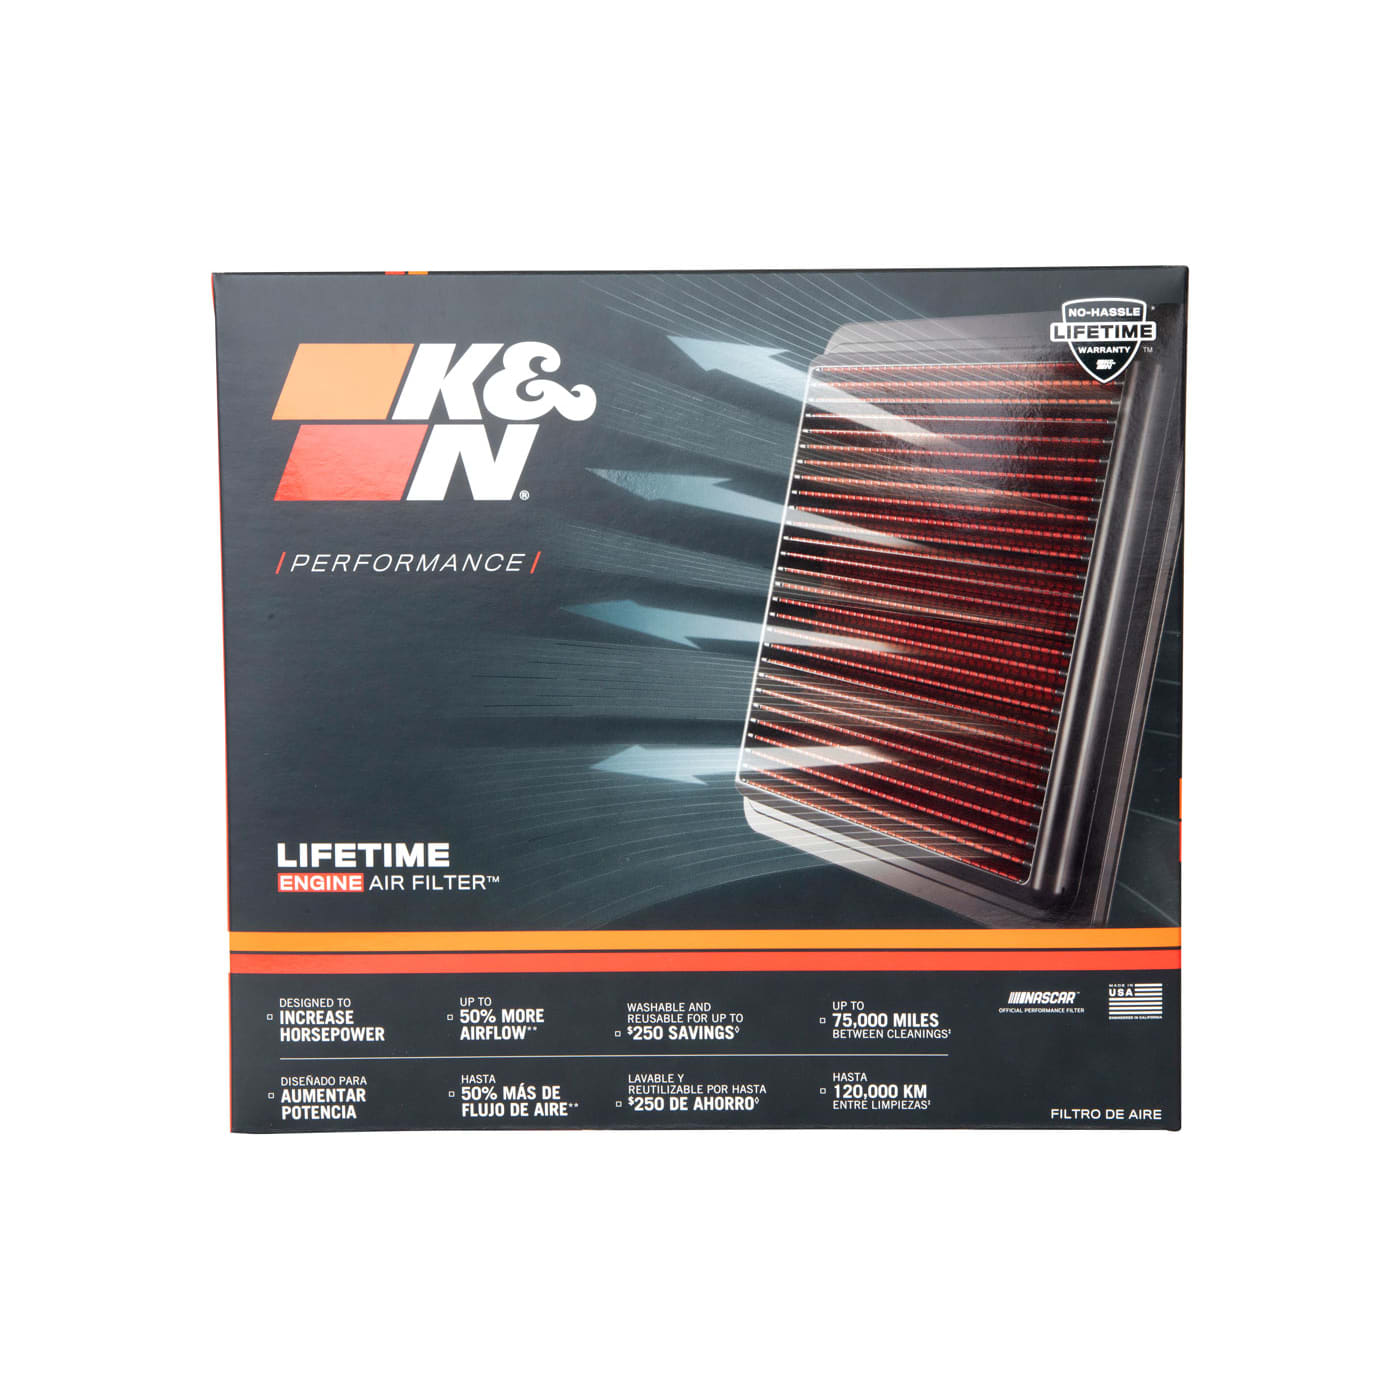 K&n filtre à air element 33-2070 performance remplacement panneau filtre à air